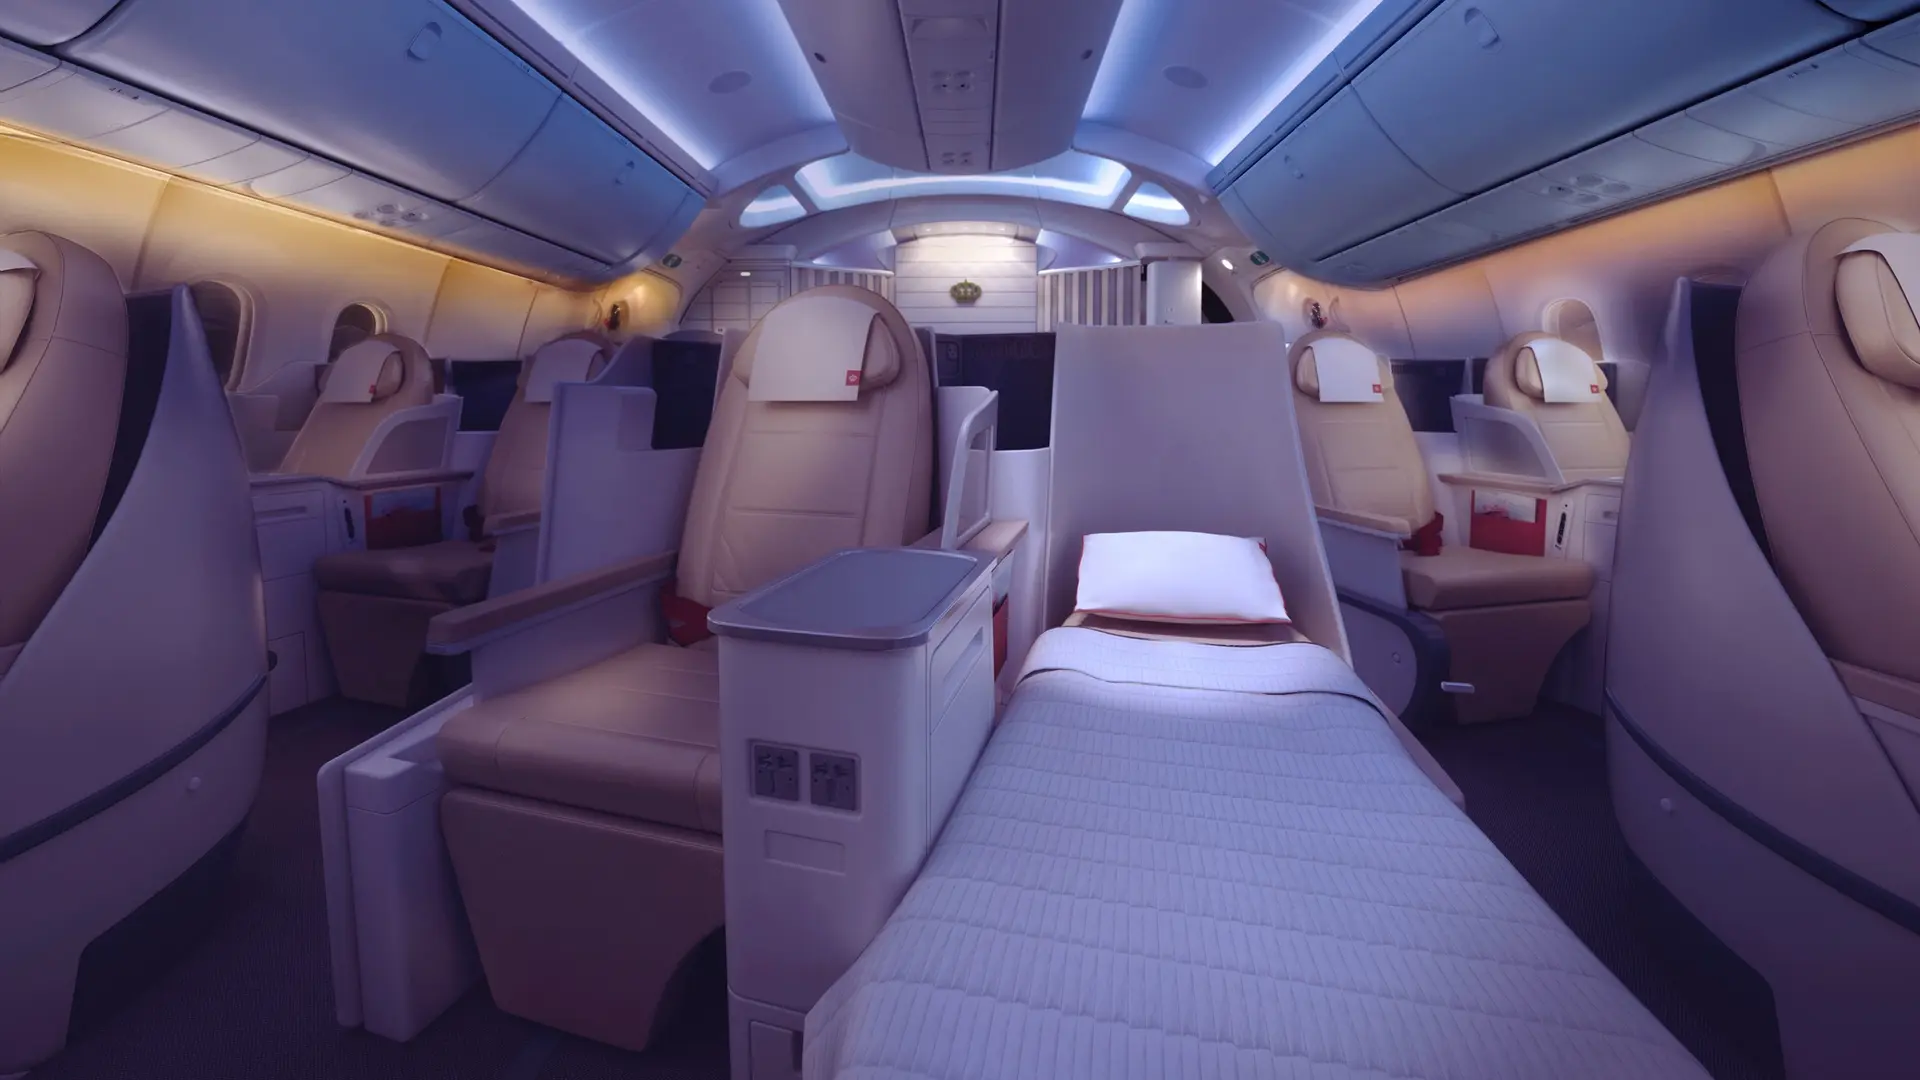 Airline review Cabin & Seat - Royal Jordanian - 2